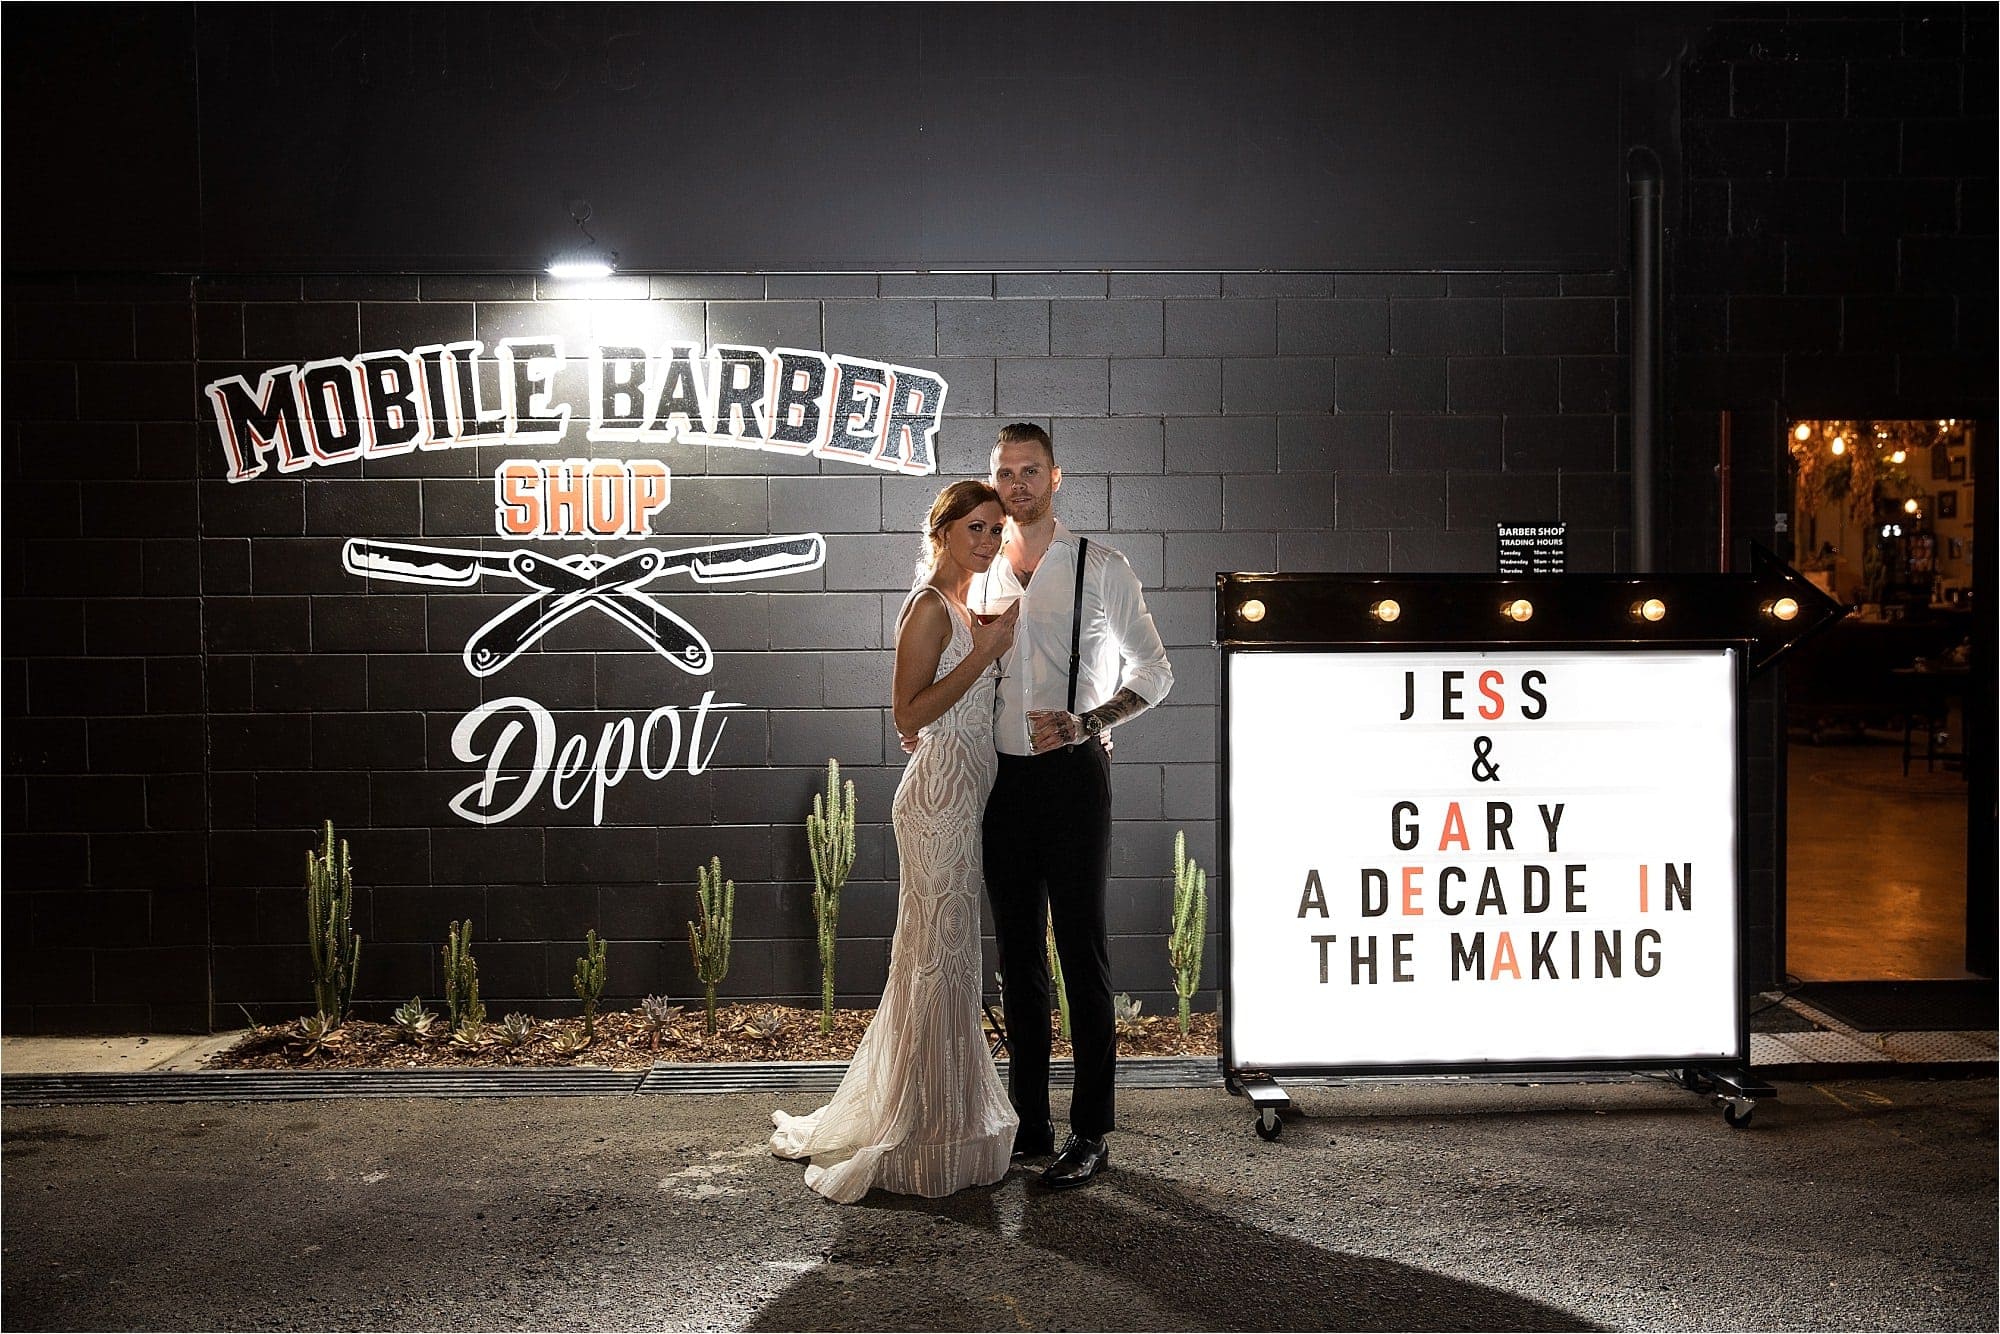 Mobile Barber Shop Depot Wedding Photography